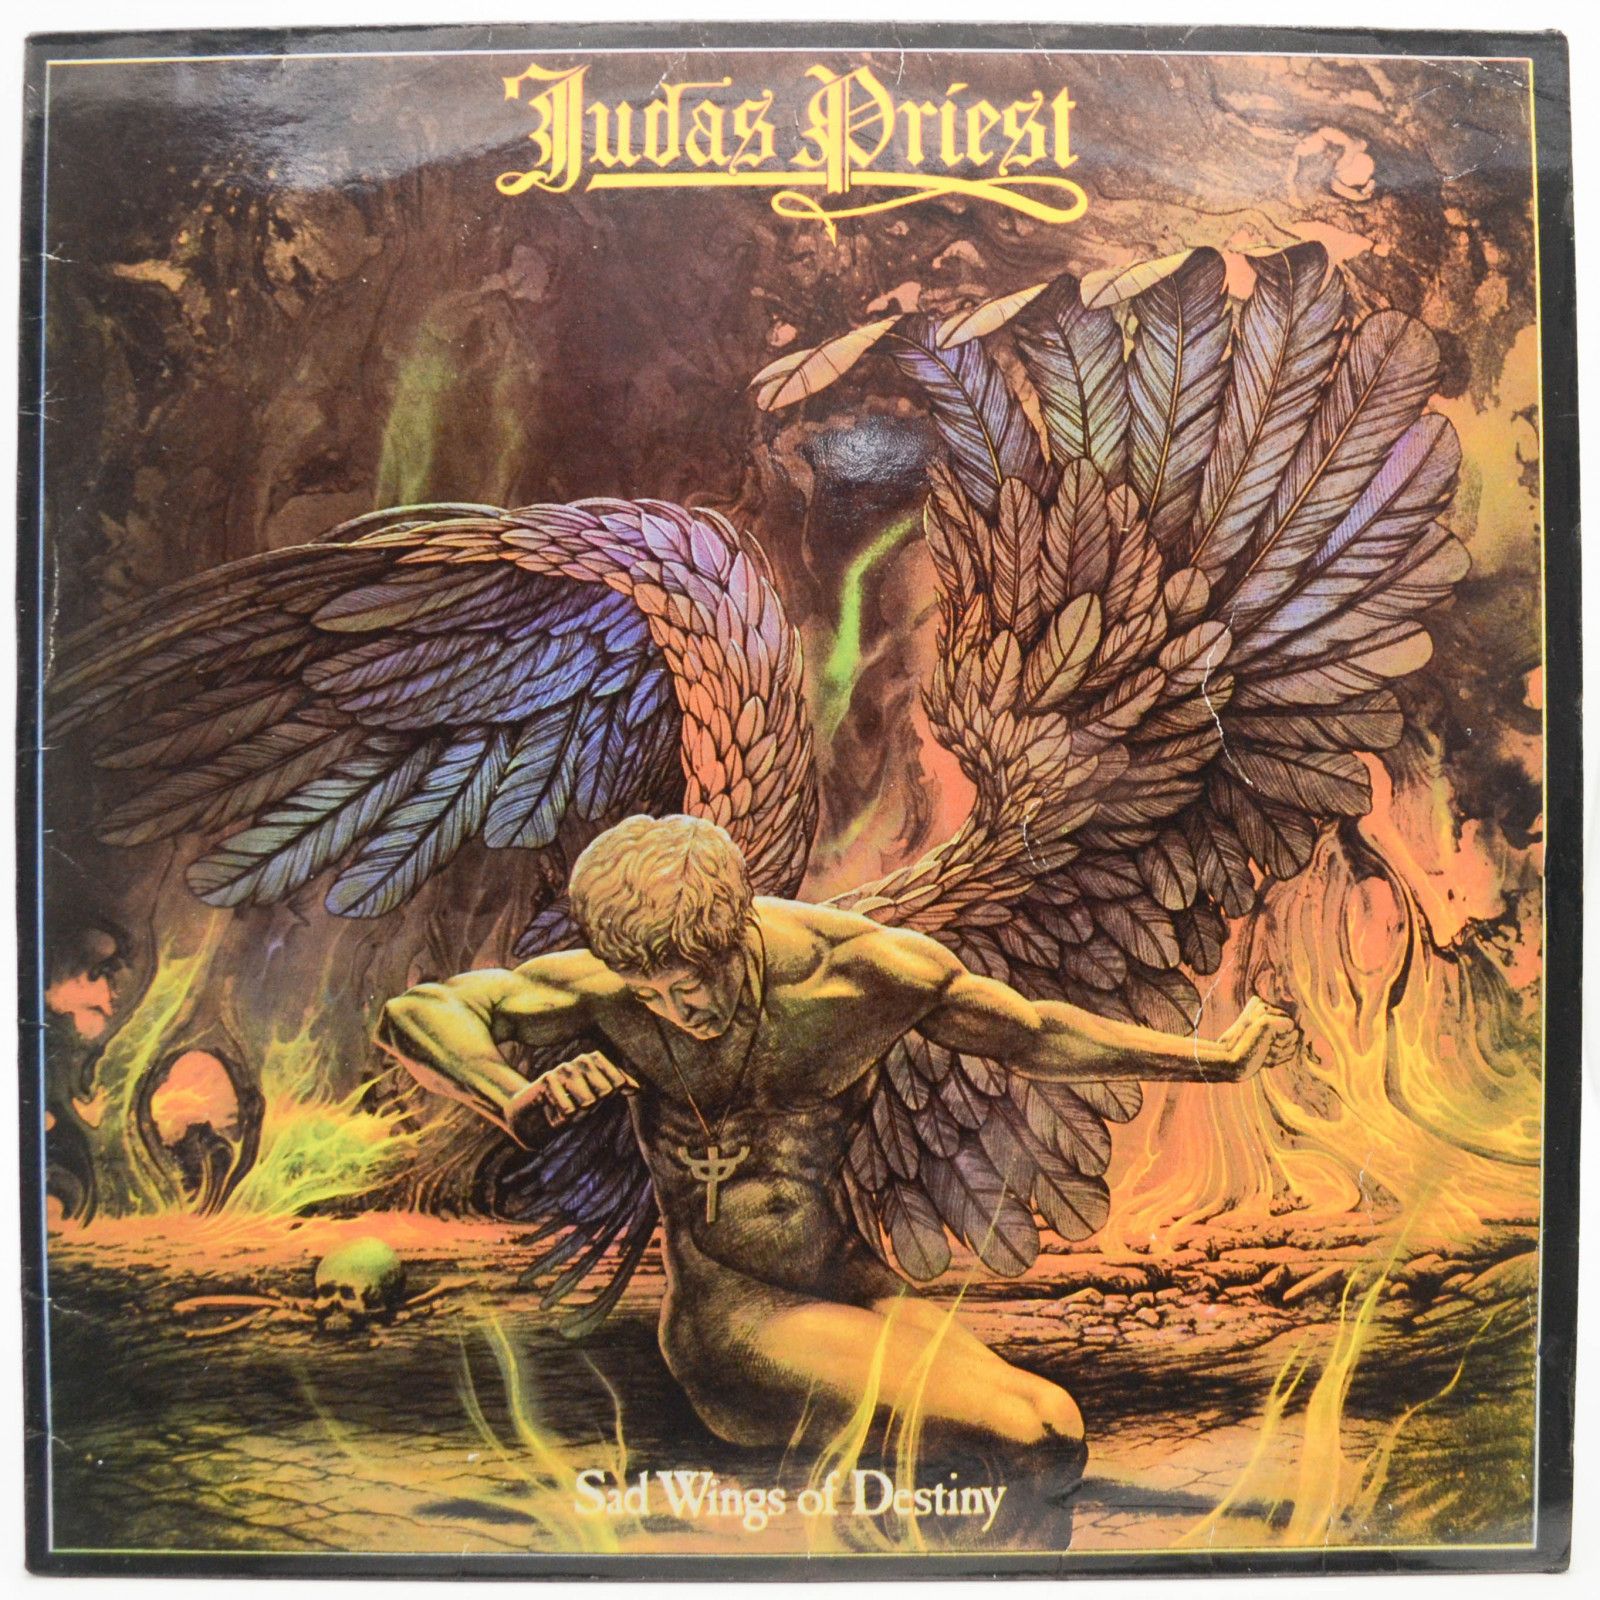 Judas Priest — Sad Wings Of Destiny, 1976